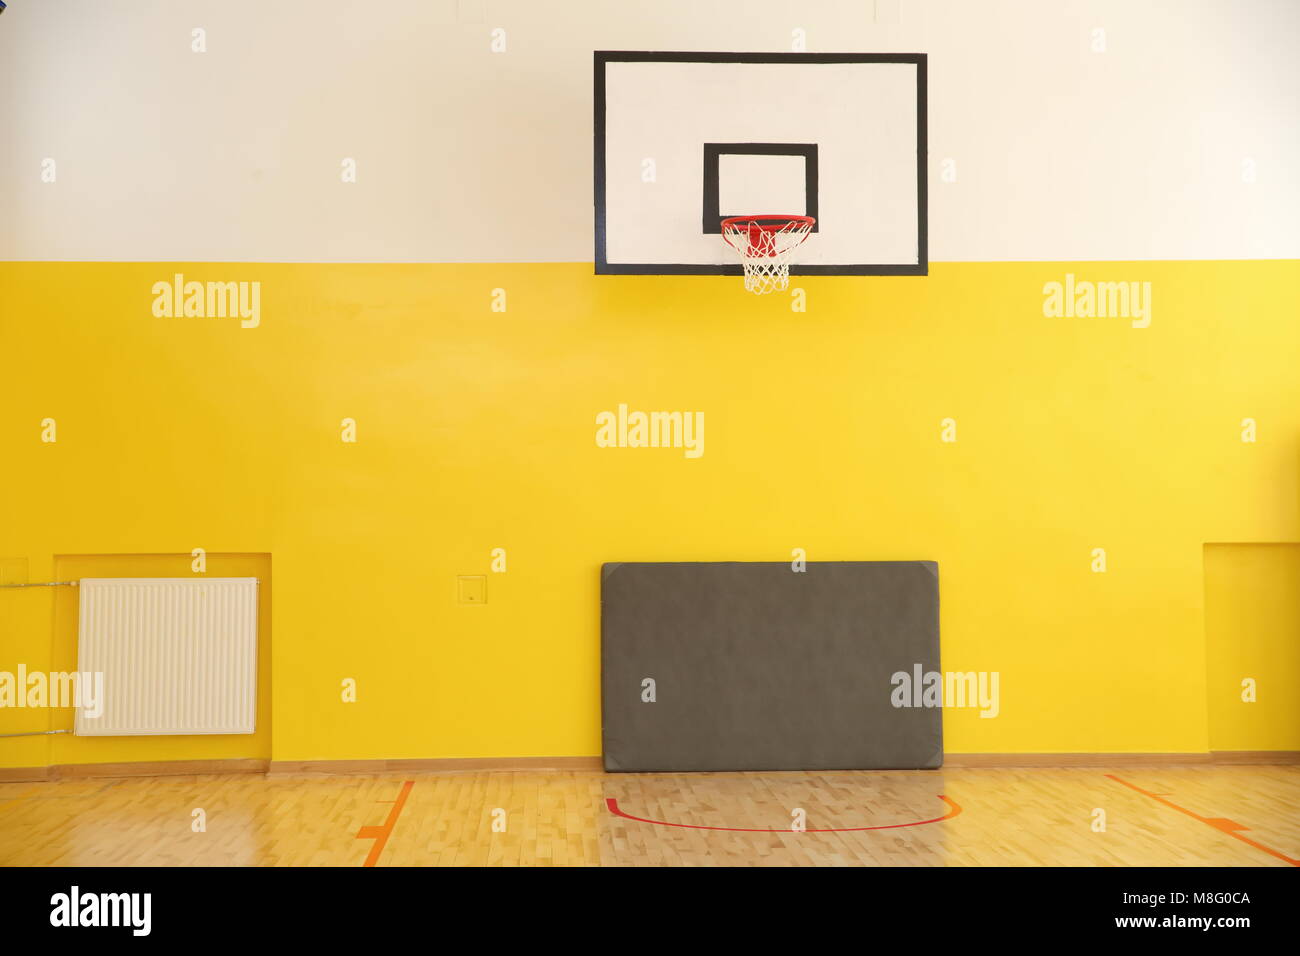 Conseils de basket-ball sont normalisés ainsi que leur hauteur sur laquelle ils sont placés de sorte que les joueurs de l'exercice dans les mêmes conditions. Banque D'Images